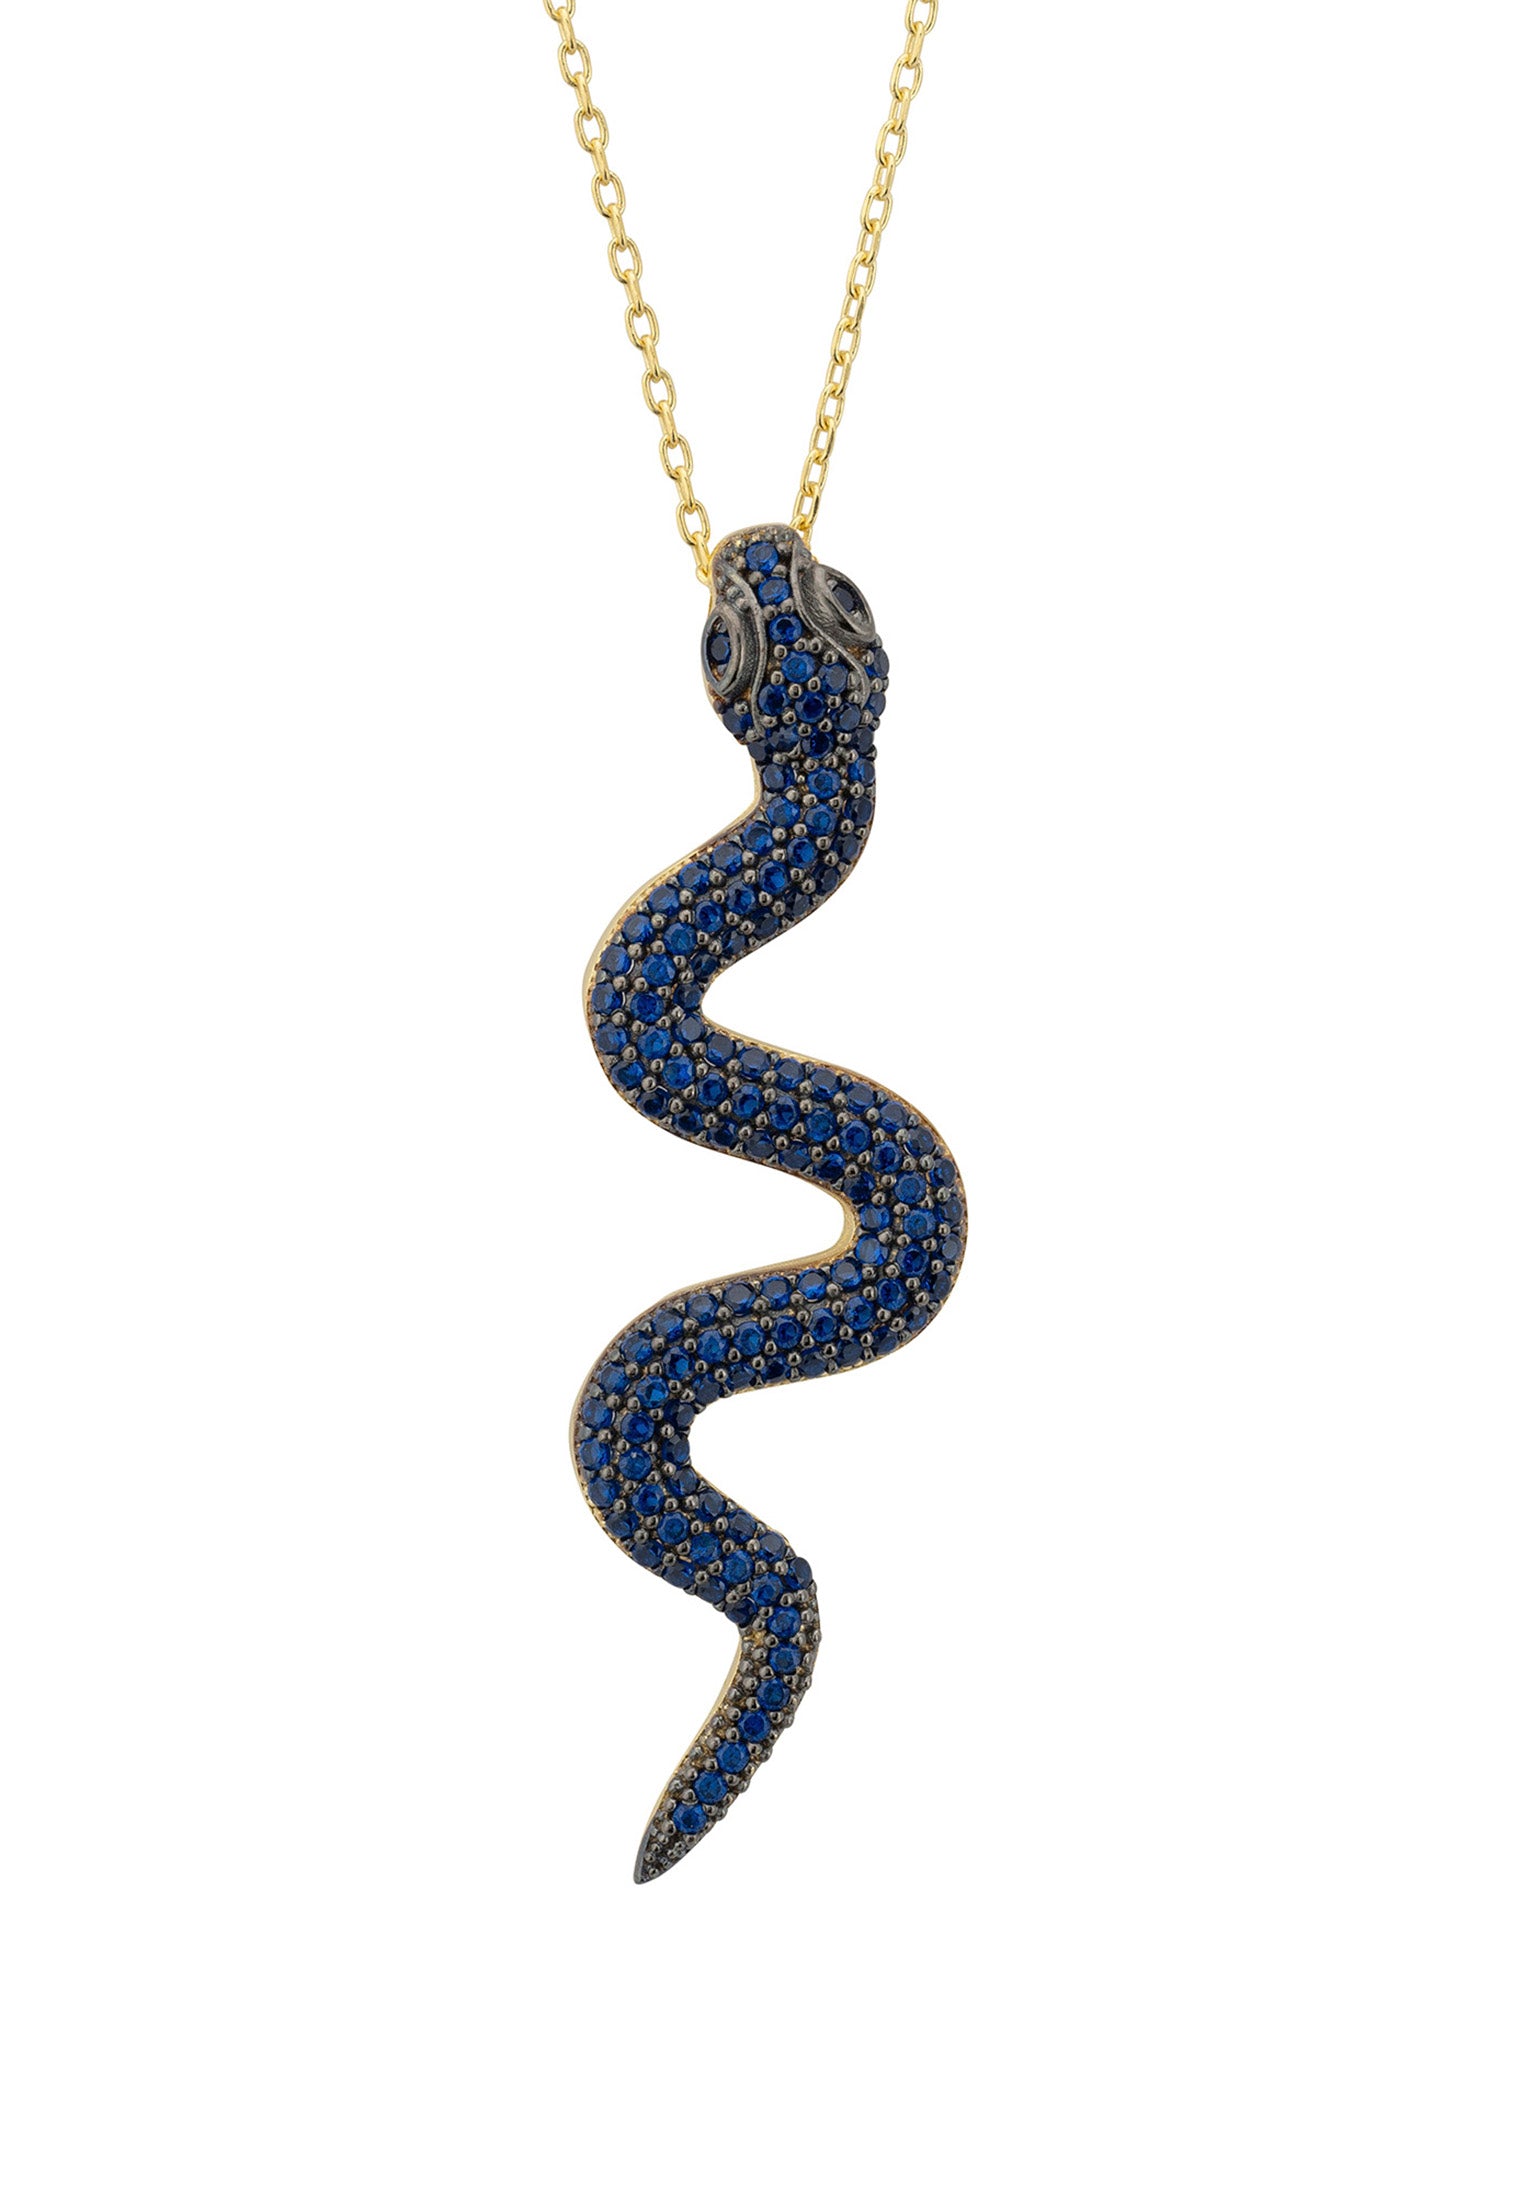 Collar con colgante de serpiente Medusa, oro, zafiro y circonitas cúbicas